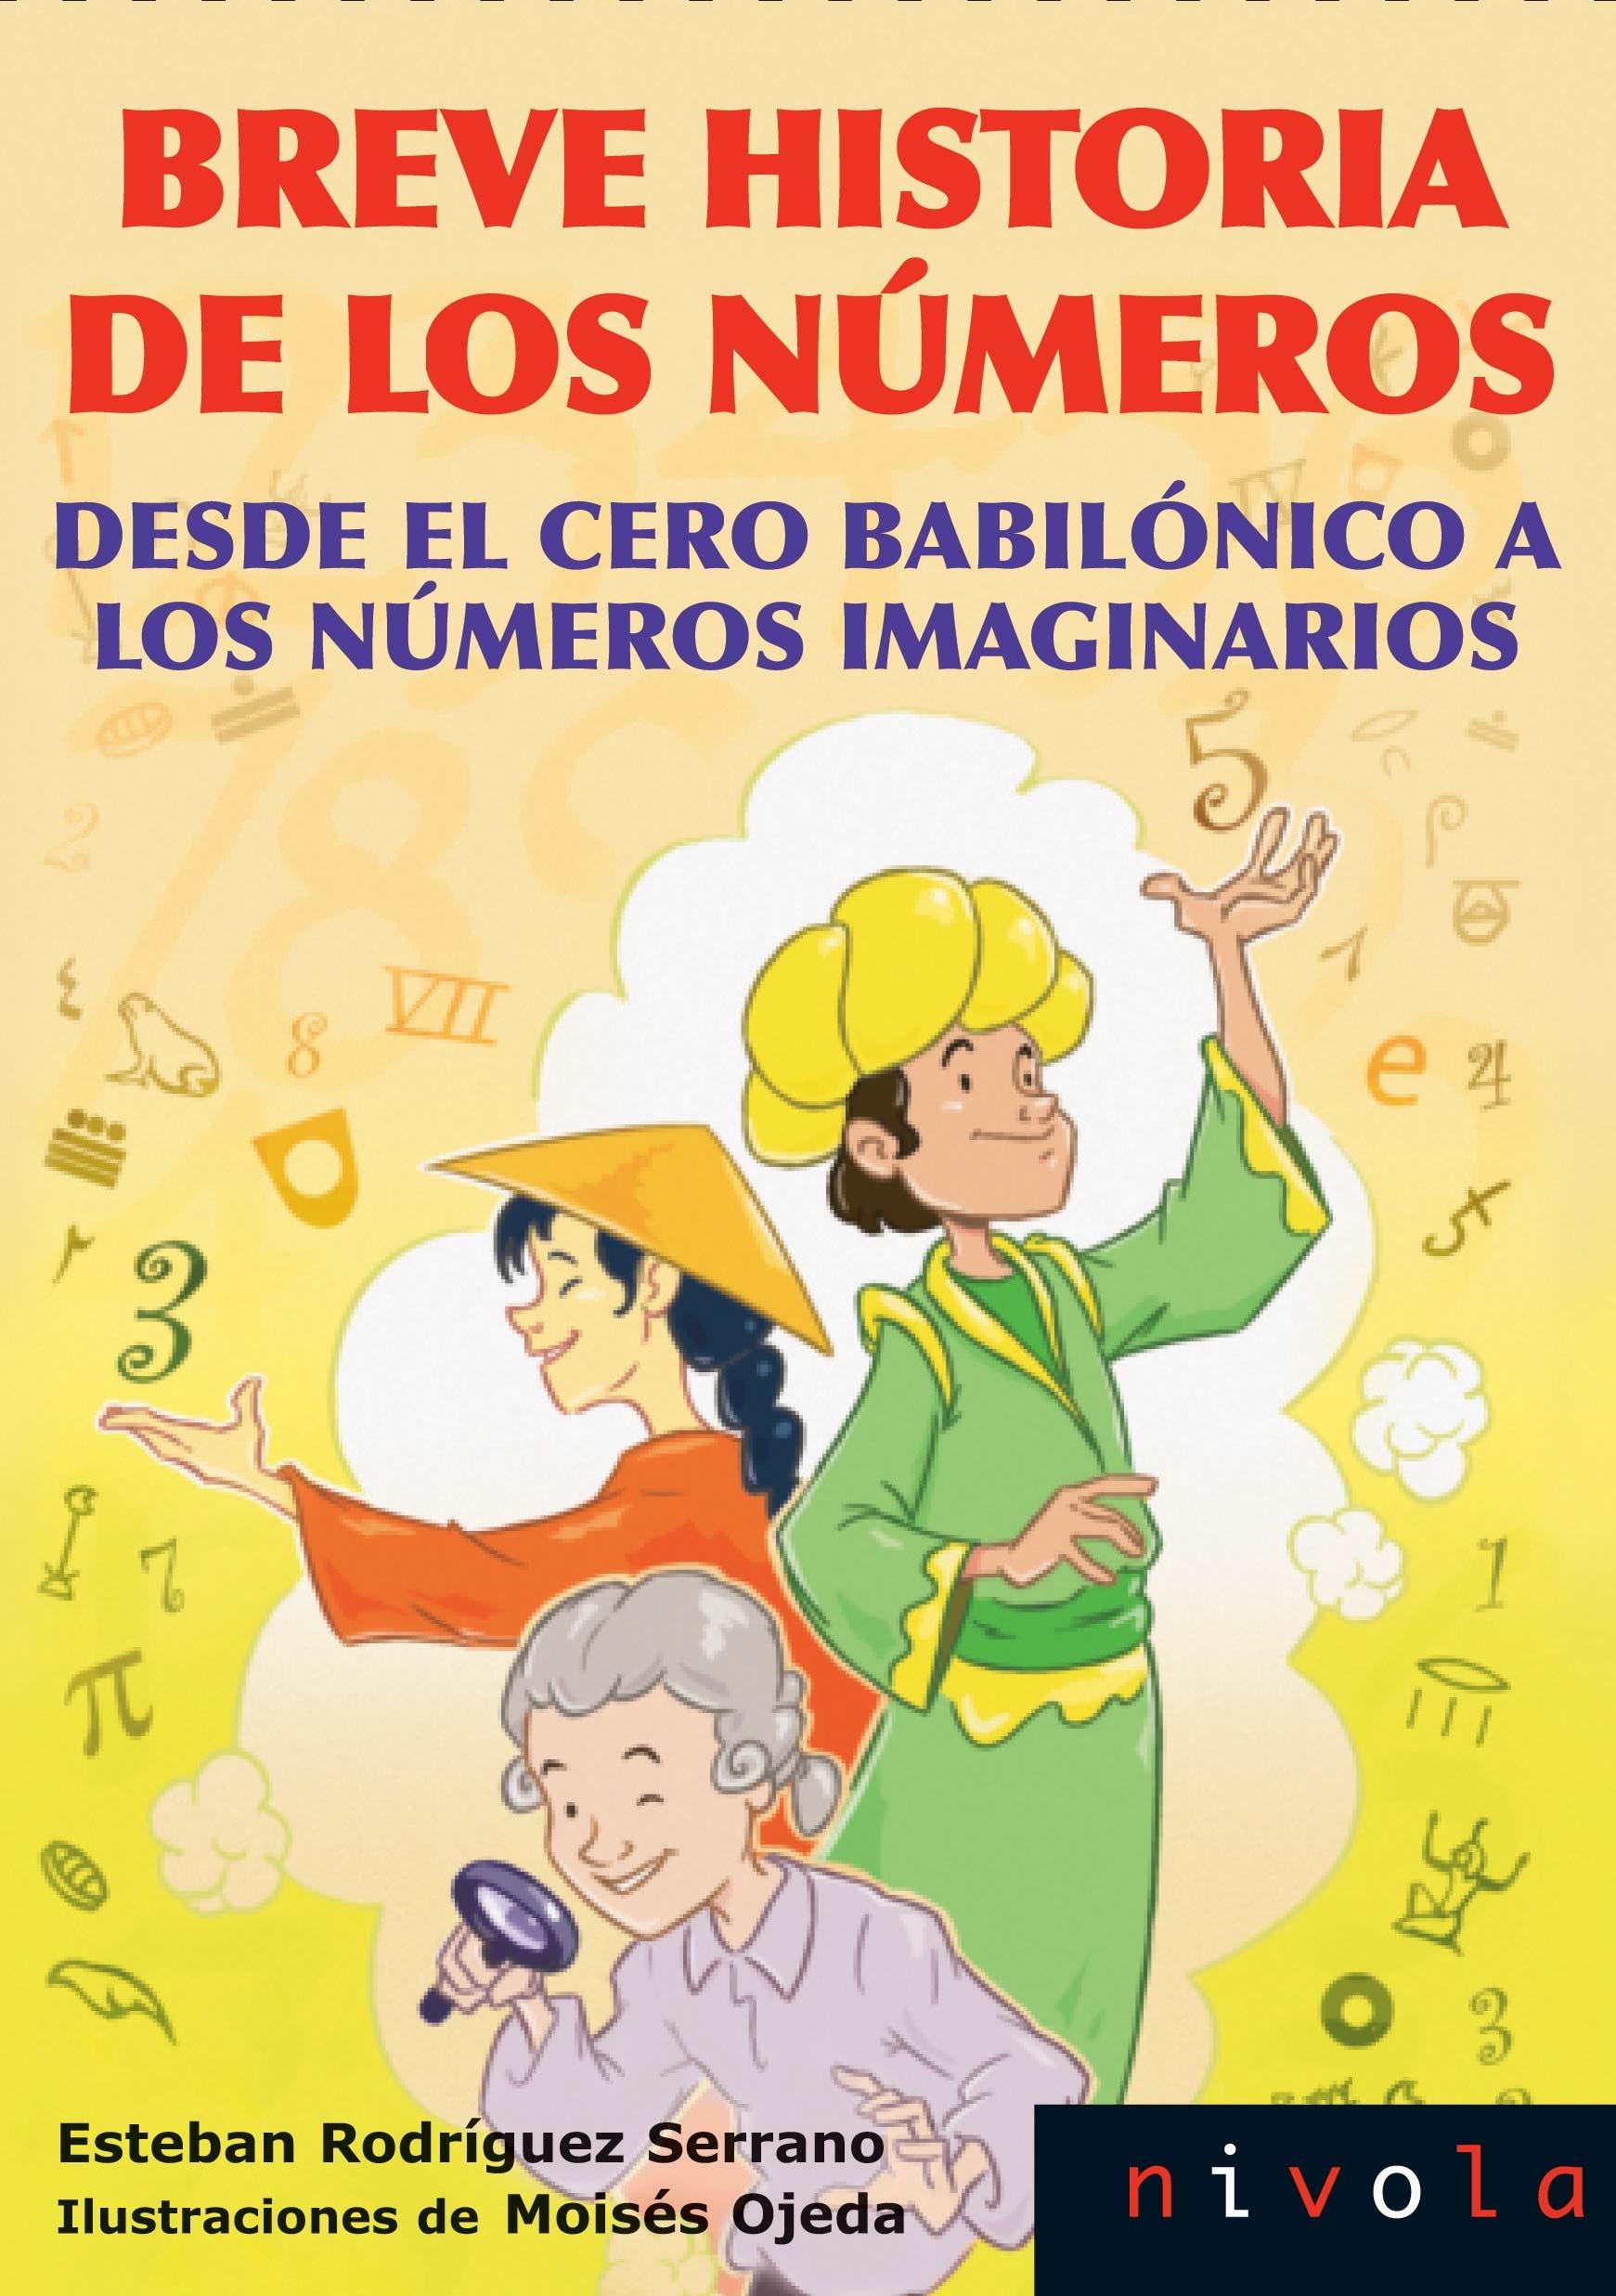 Breve historia de los números "Desde el cero babilónico a los números imaginarios". 